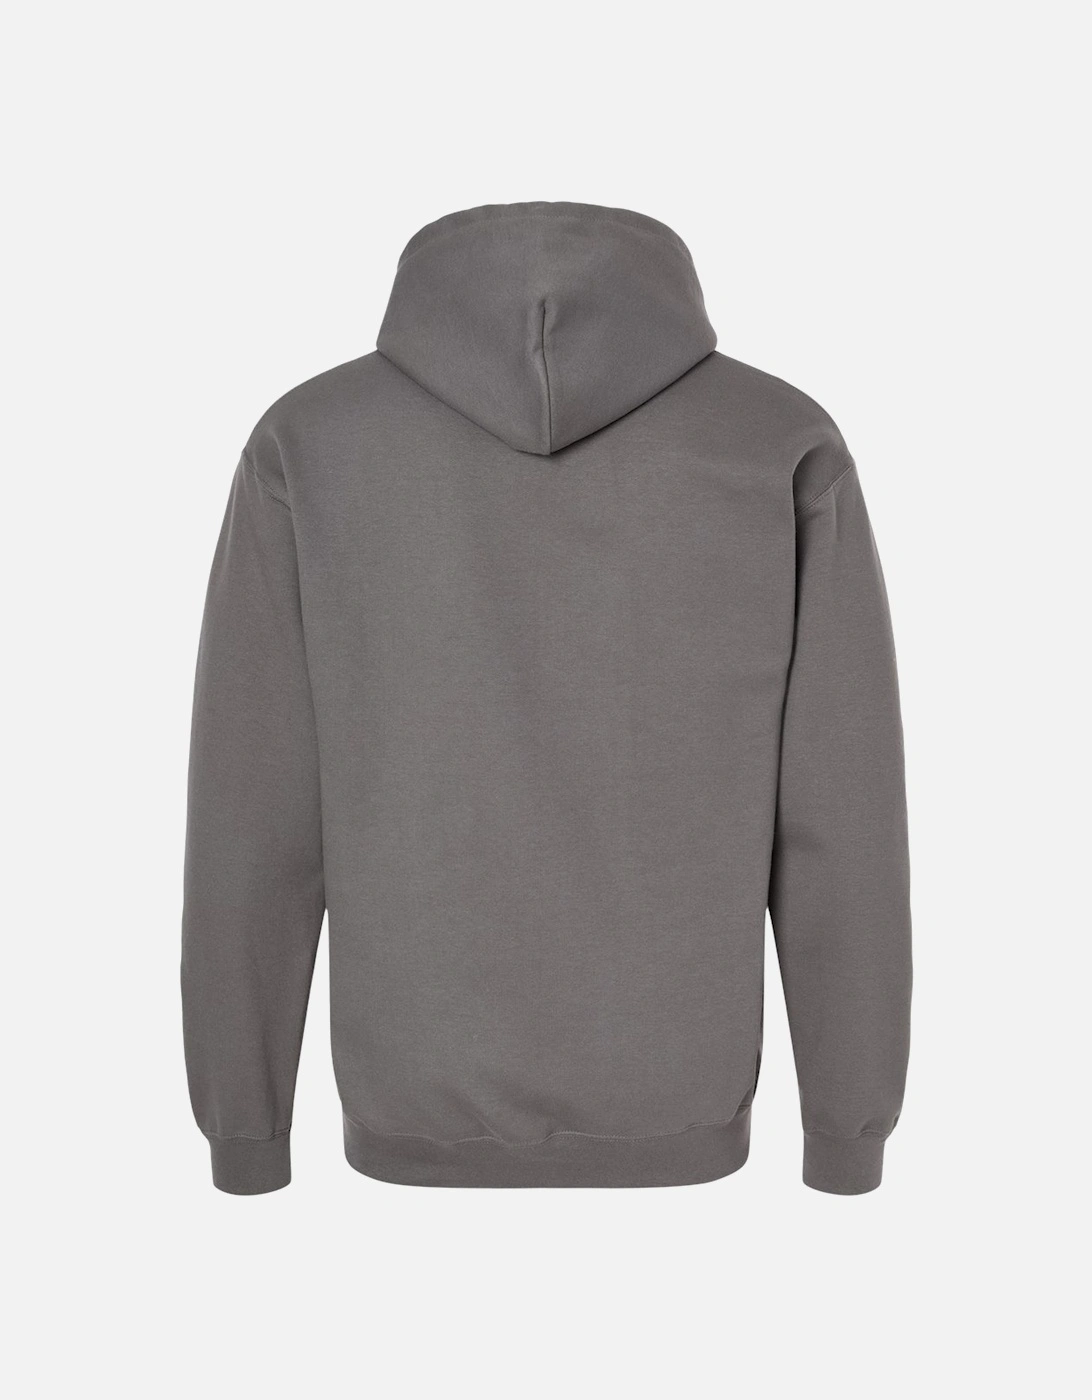 Unisex Adult Softstyle Fleece Midweight Sweatshirt, 5 of 4